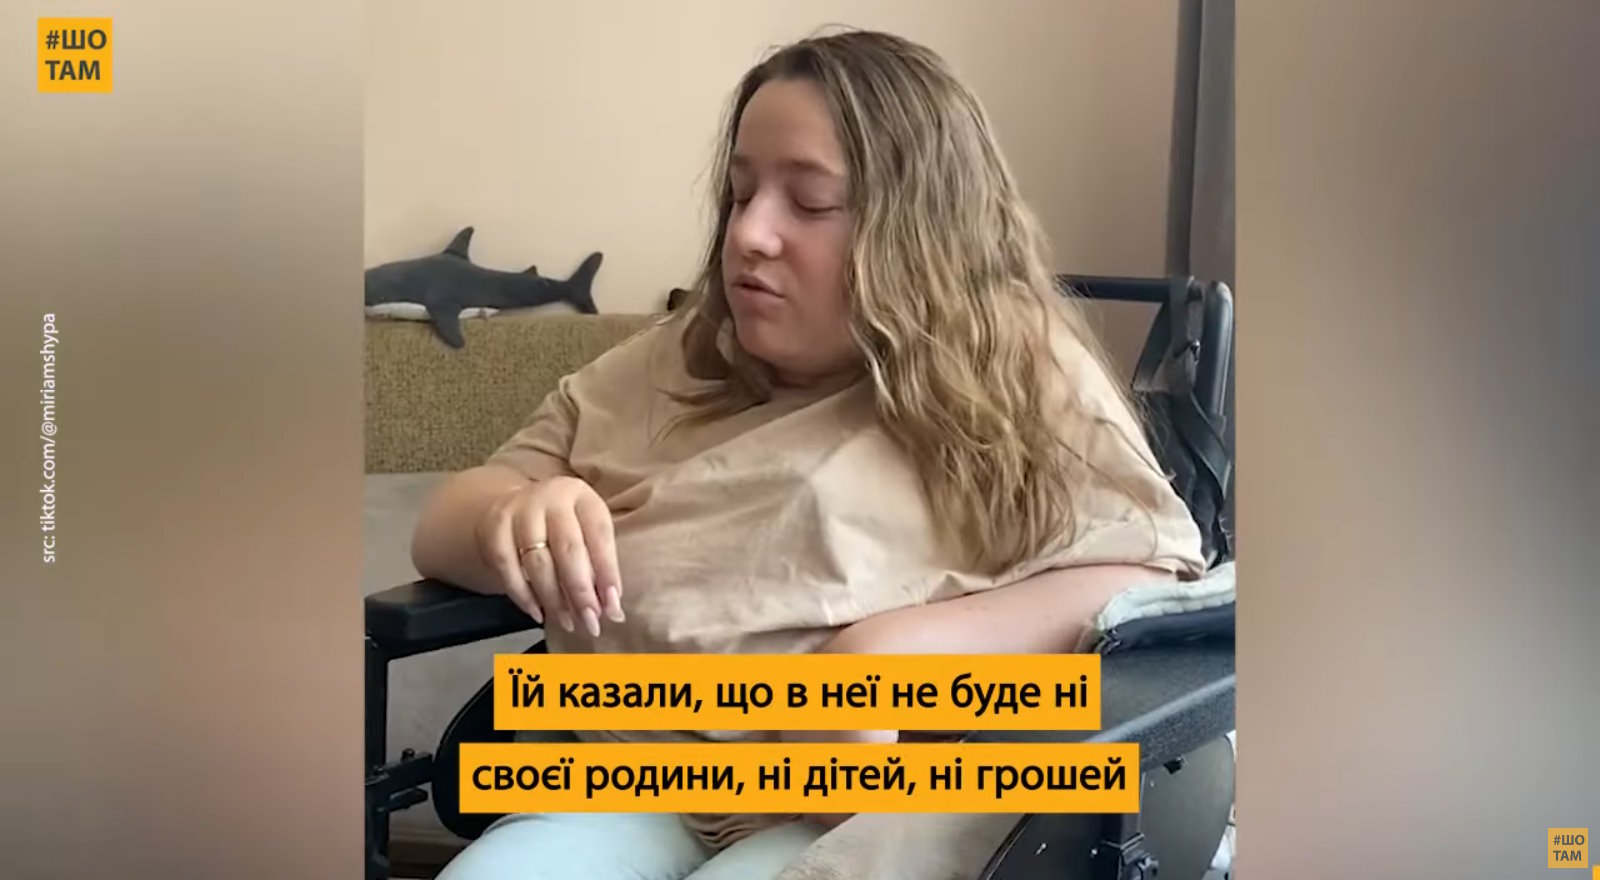 Блогерка з інвалідністю надихає українців на яскраве життя (ВІДЕО). сма, блогерка, діагноз, колісне крісло, мотивація